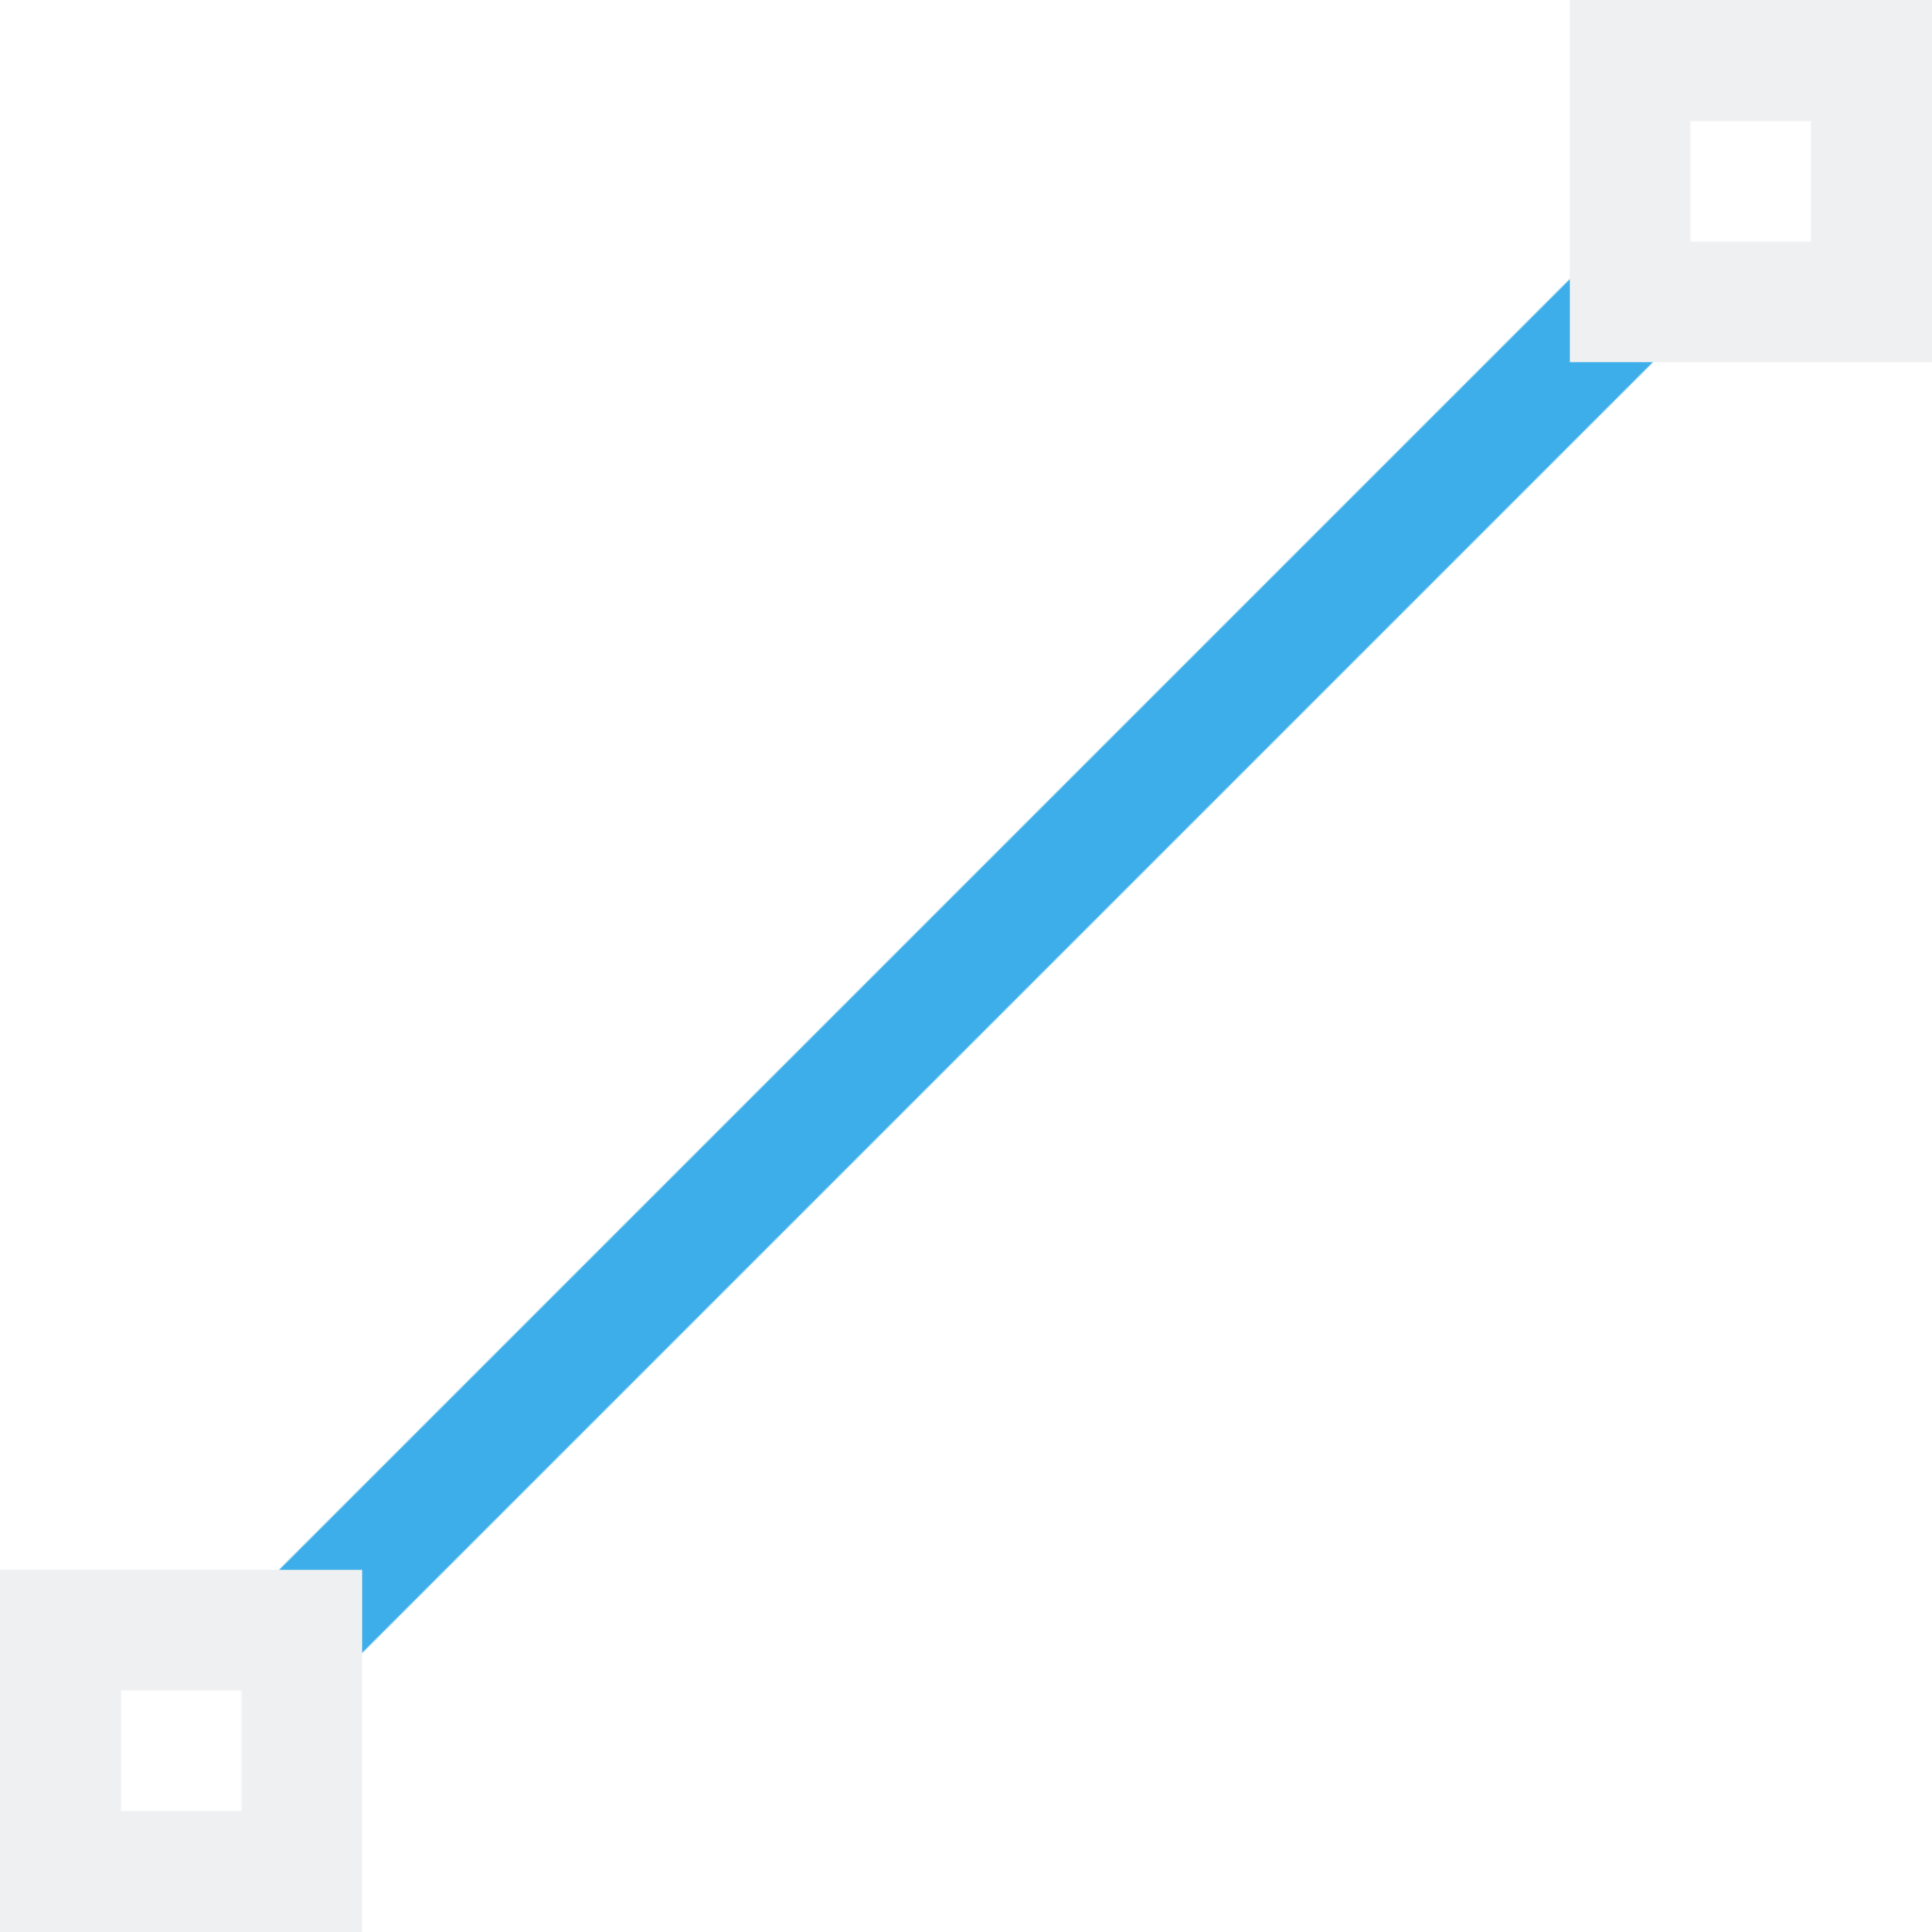 format segment line icon